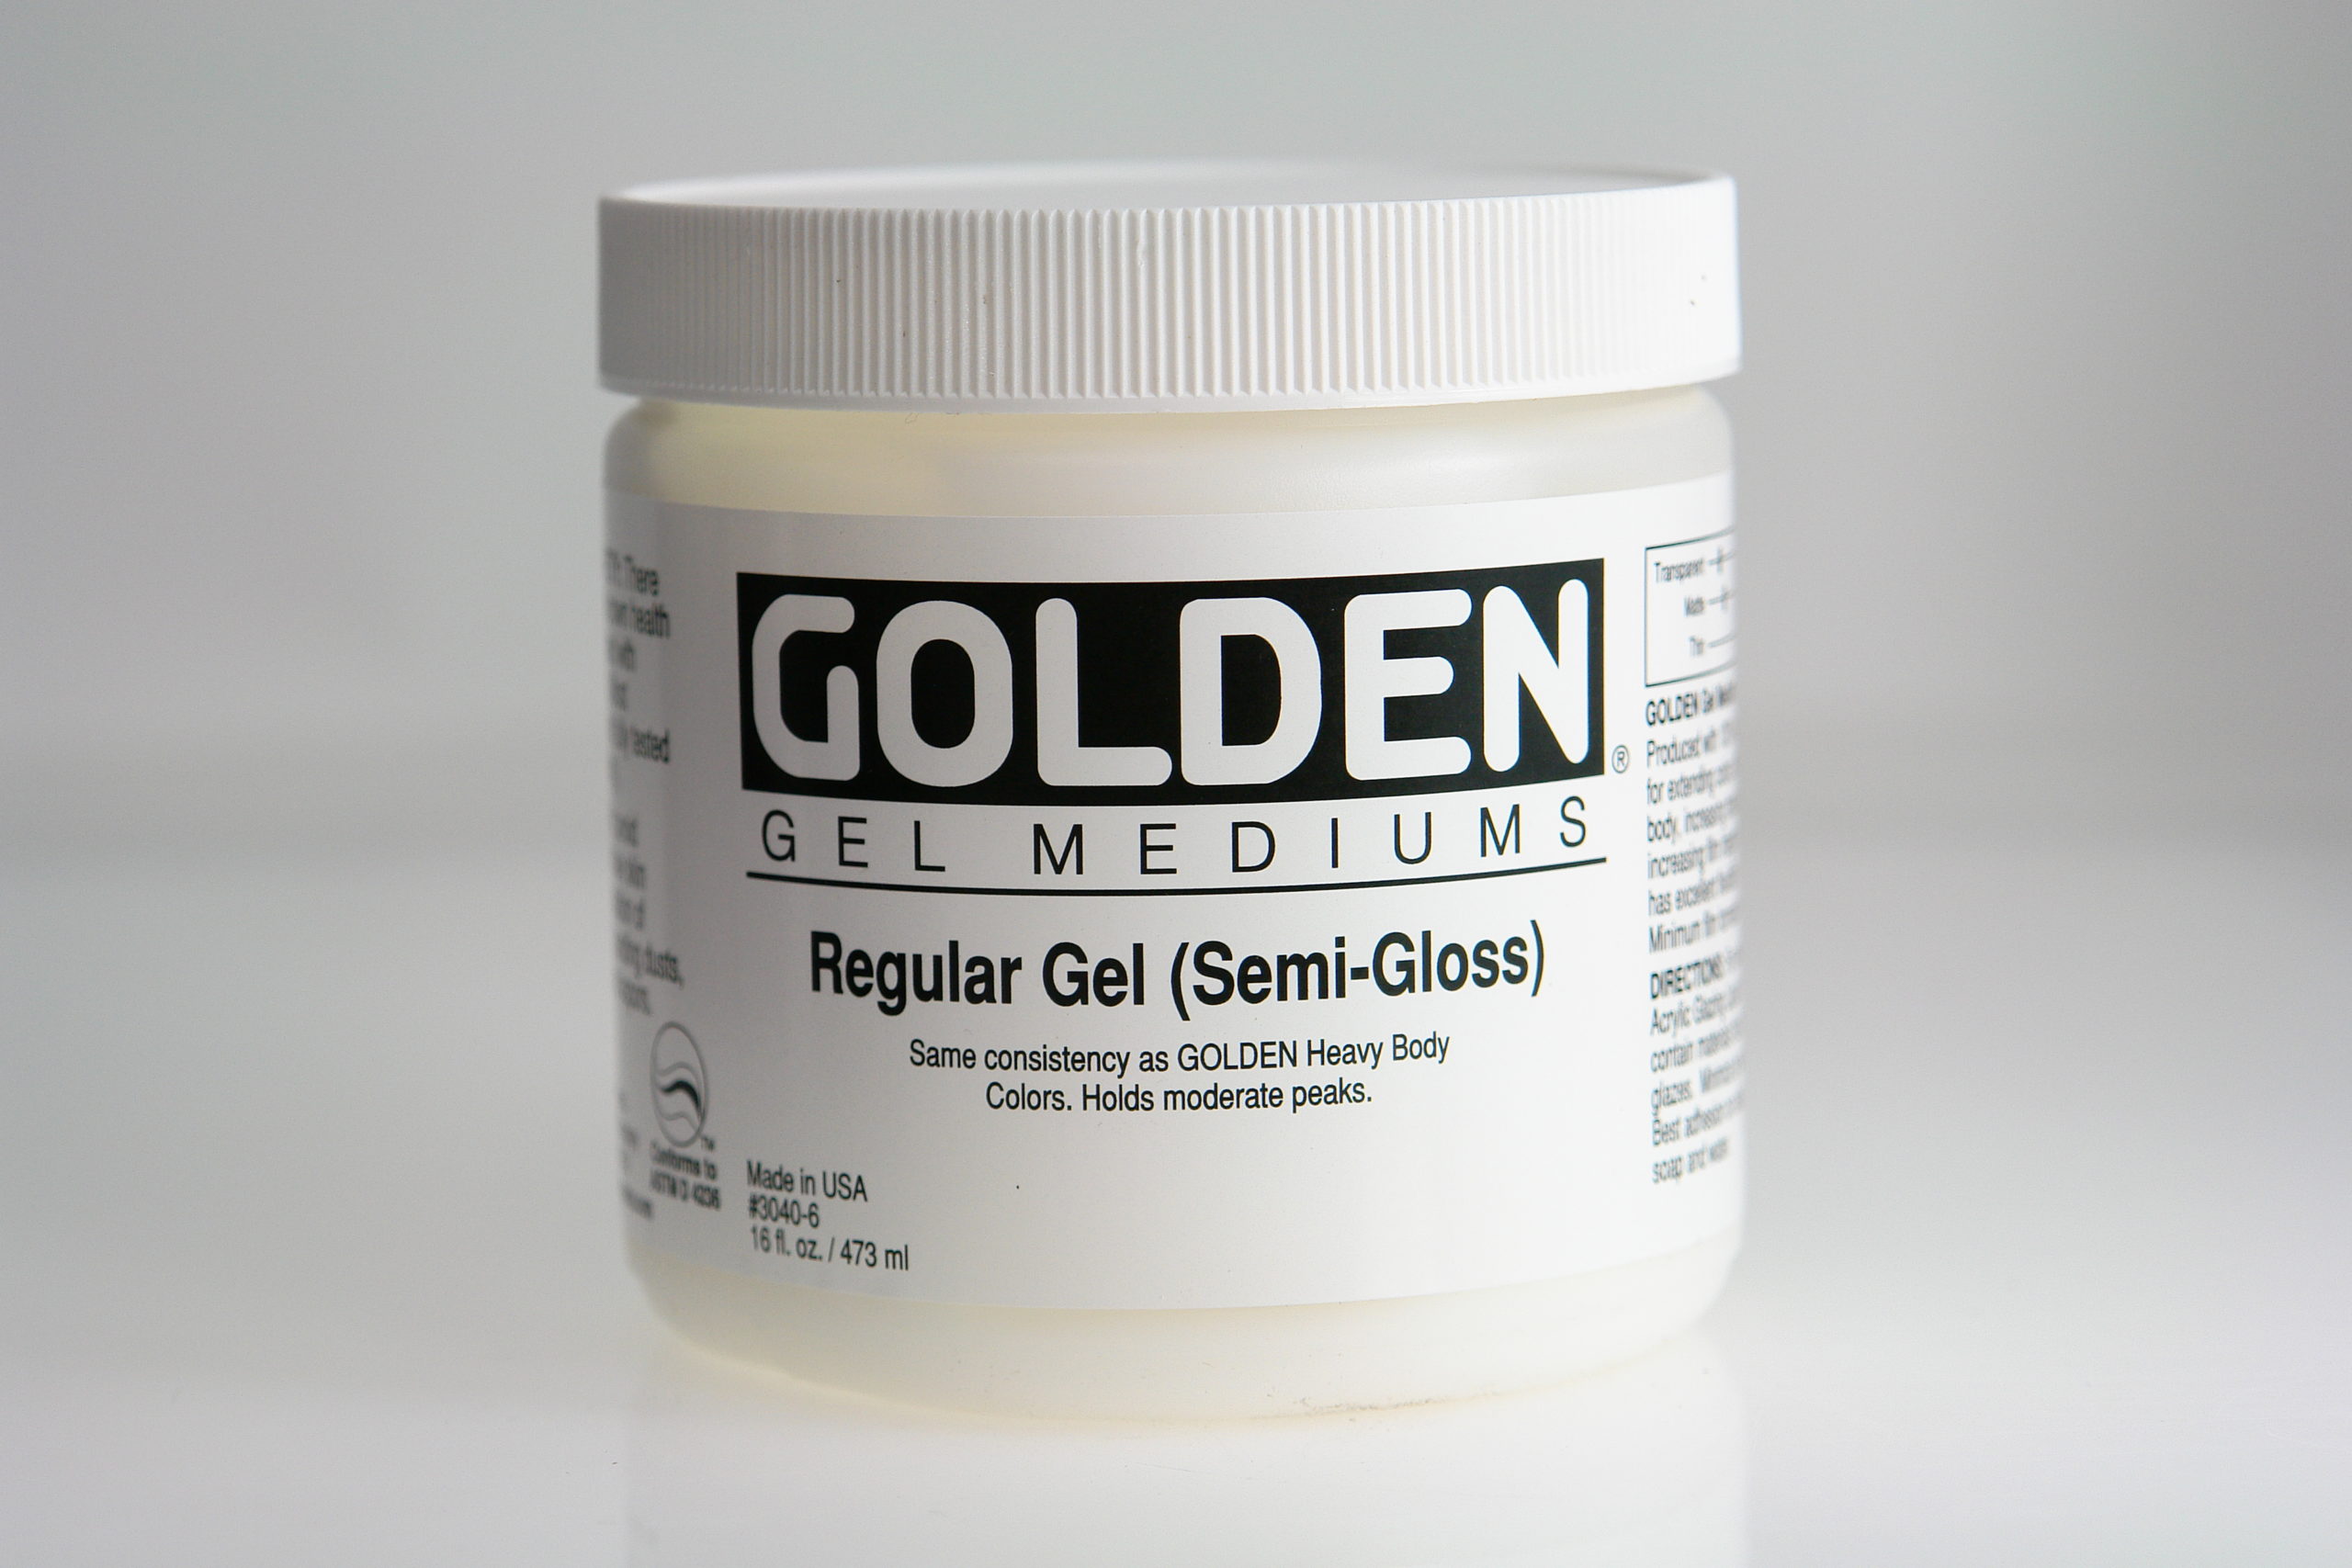 Golden Regular Gel Semi-Gloss